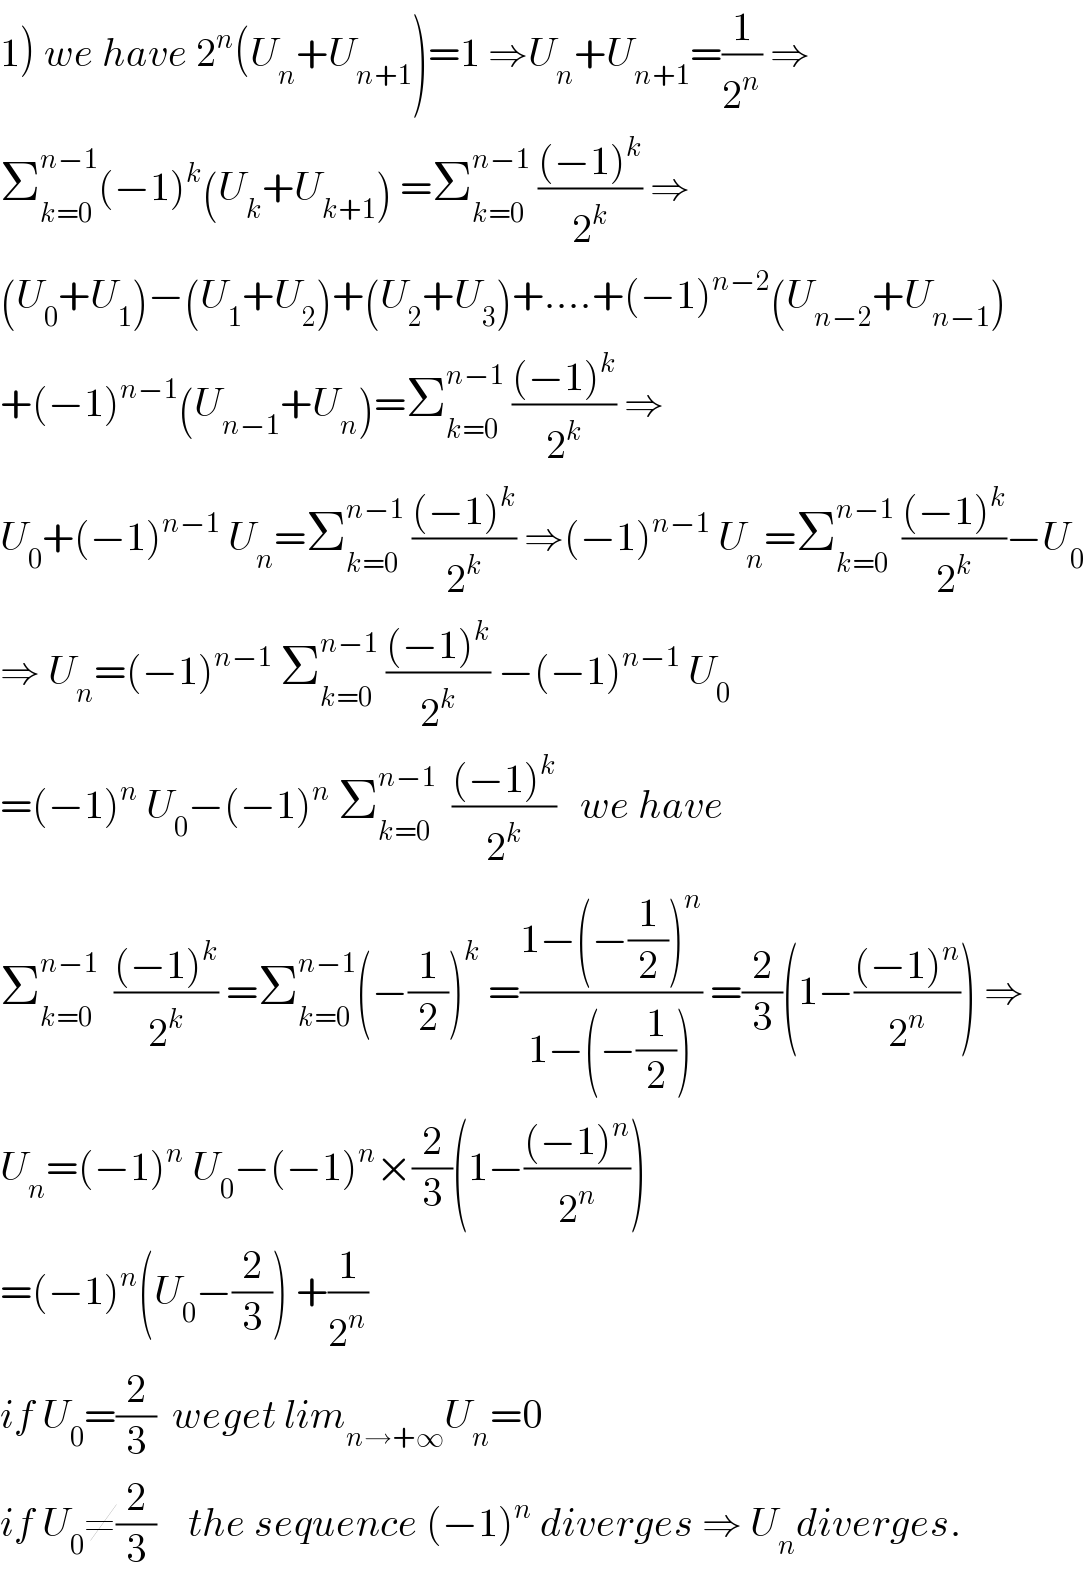 1) we have 2^n (U_n +U_(n+1) )=1 ⇒U_n +U_(n+1) =(1/2^n ) ⇒  Σ_(k=0) ^(n−1) (−1)^k (U_k +U_(k+1) ) =Σ_(k=0) ^(n−1)  (((−1)^k )/2^k ) ⇒  (U_0 +U_1 )−(U_1 +U_2 )+(U_2 +U_3 )+....+(−1)^(n−2) (U_(n−2) +U_(n−1) )  +(−1)^(n−1) (U_(n−1) +U_n )=Σ_(k=0) ^(n−1)  (((−1)^k )/2^k ) ⇒  U_0 +(−1)^(n−1)  U_n =Σ_(k=0) ^(n−1)  (((−1)^k )/2^k ) ⇒(−1)^(n−1)  U_n =Σ_(k=0) ^(n−1)  (((−1)^k )/2^k )−U_0   ⇒ U_n =(−1)^(n−1)  Σ_(k=0) ^(n−1)  (((−1)^k )/2^k ) −(−1)^(n−1)  U_0   =(−1)^n  U_0 −(−1)^n  Σ_(k=0) ^(n−1)   (((−1)^k )/2^k )   we have  Σ_(k=0) ^(n−1)   (((−1)^k )/2^k ) =Σ_(k=0) ^(n−1) (−(1/2))^k  =((1−(−(1/2))^n )/(1−(−(1/2)))) =(2/3)(1−(((−1)^n )/2^n )) ⇒  U_n =(−1)^n  U_0 −(−1)^n ×(2/3)(1−(((−1)^n )/2^n ))  =(−1)^n (U_0 −(2/3)) +(1/2^n )  if U_0 =(2/3)  weget lim_(n→+∞) U_n =0  if U_0 ≠(2/3)    the sequence (−1)^n  diverges ⇒ U_n diverges.  